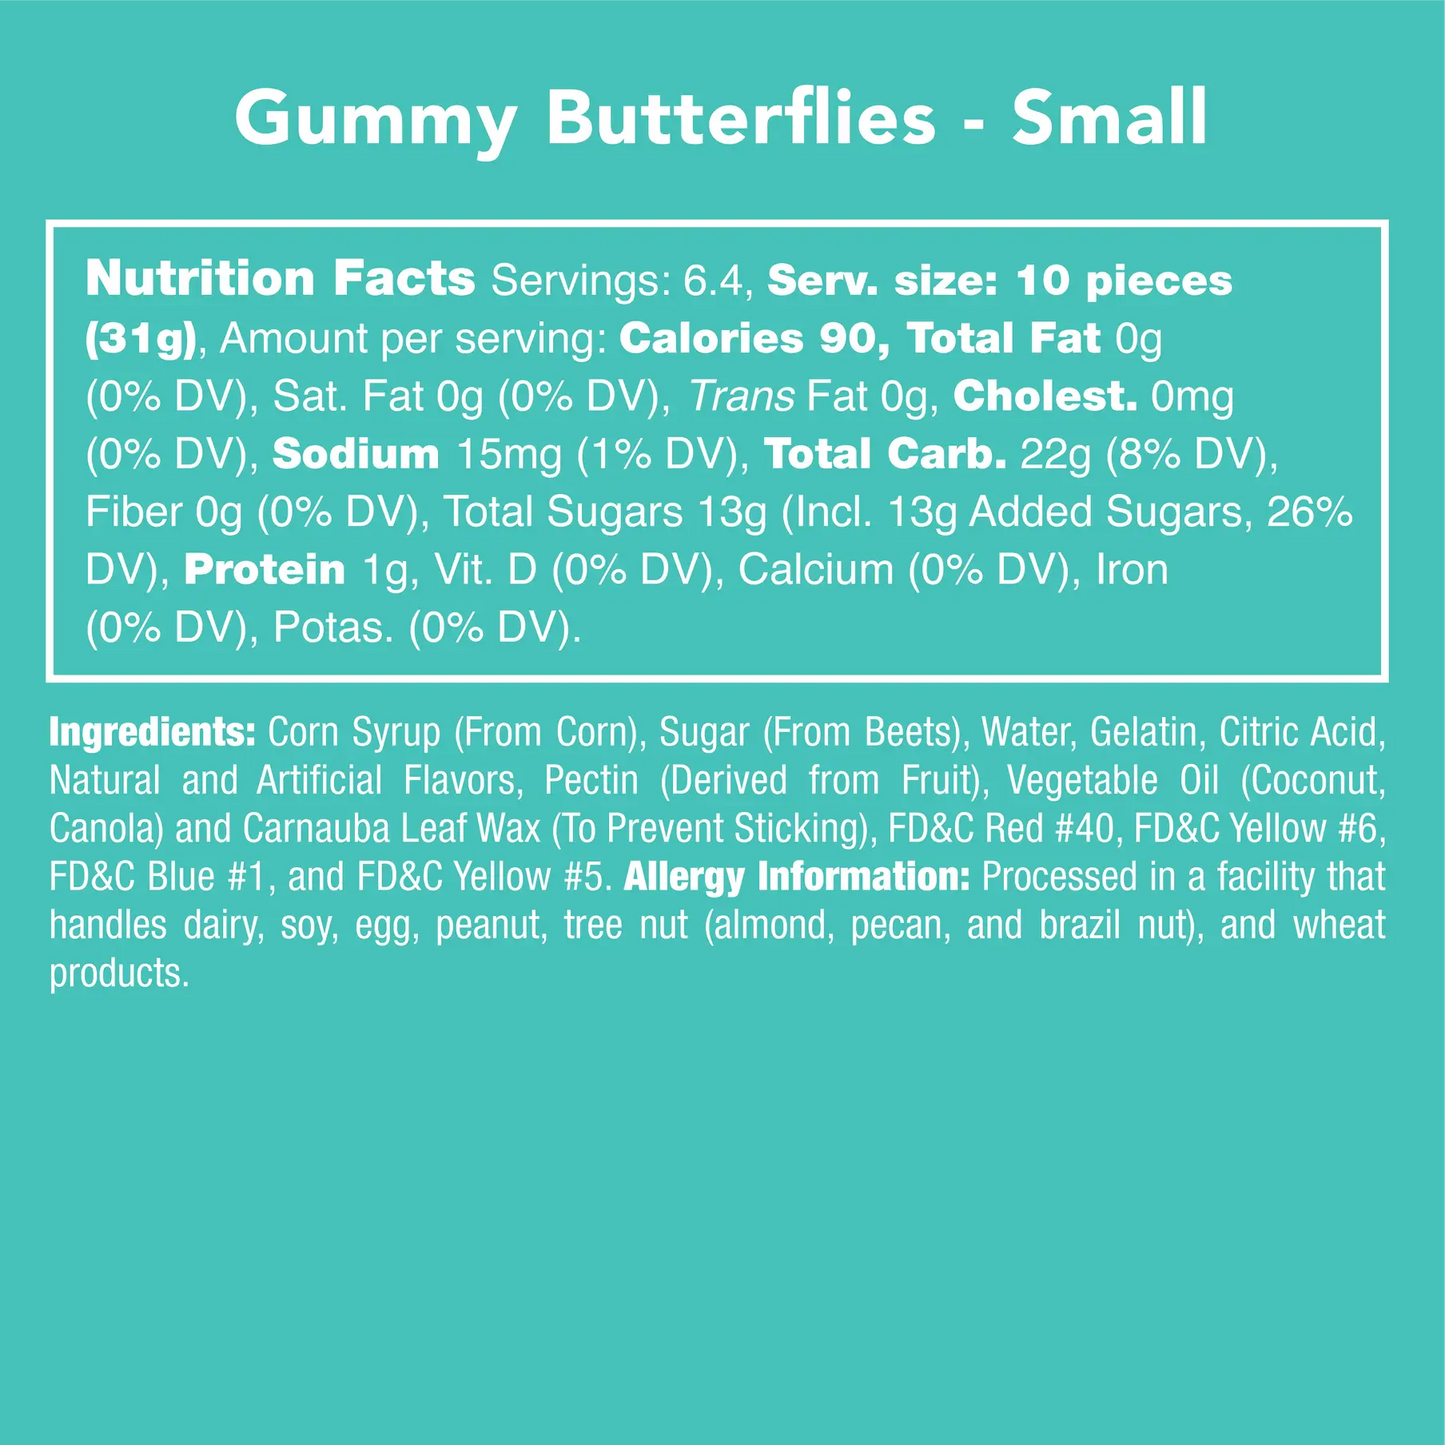 Gummy Butterflies Candy